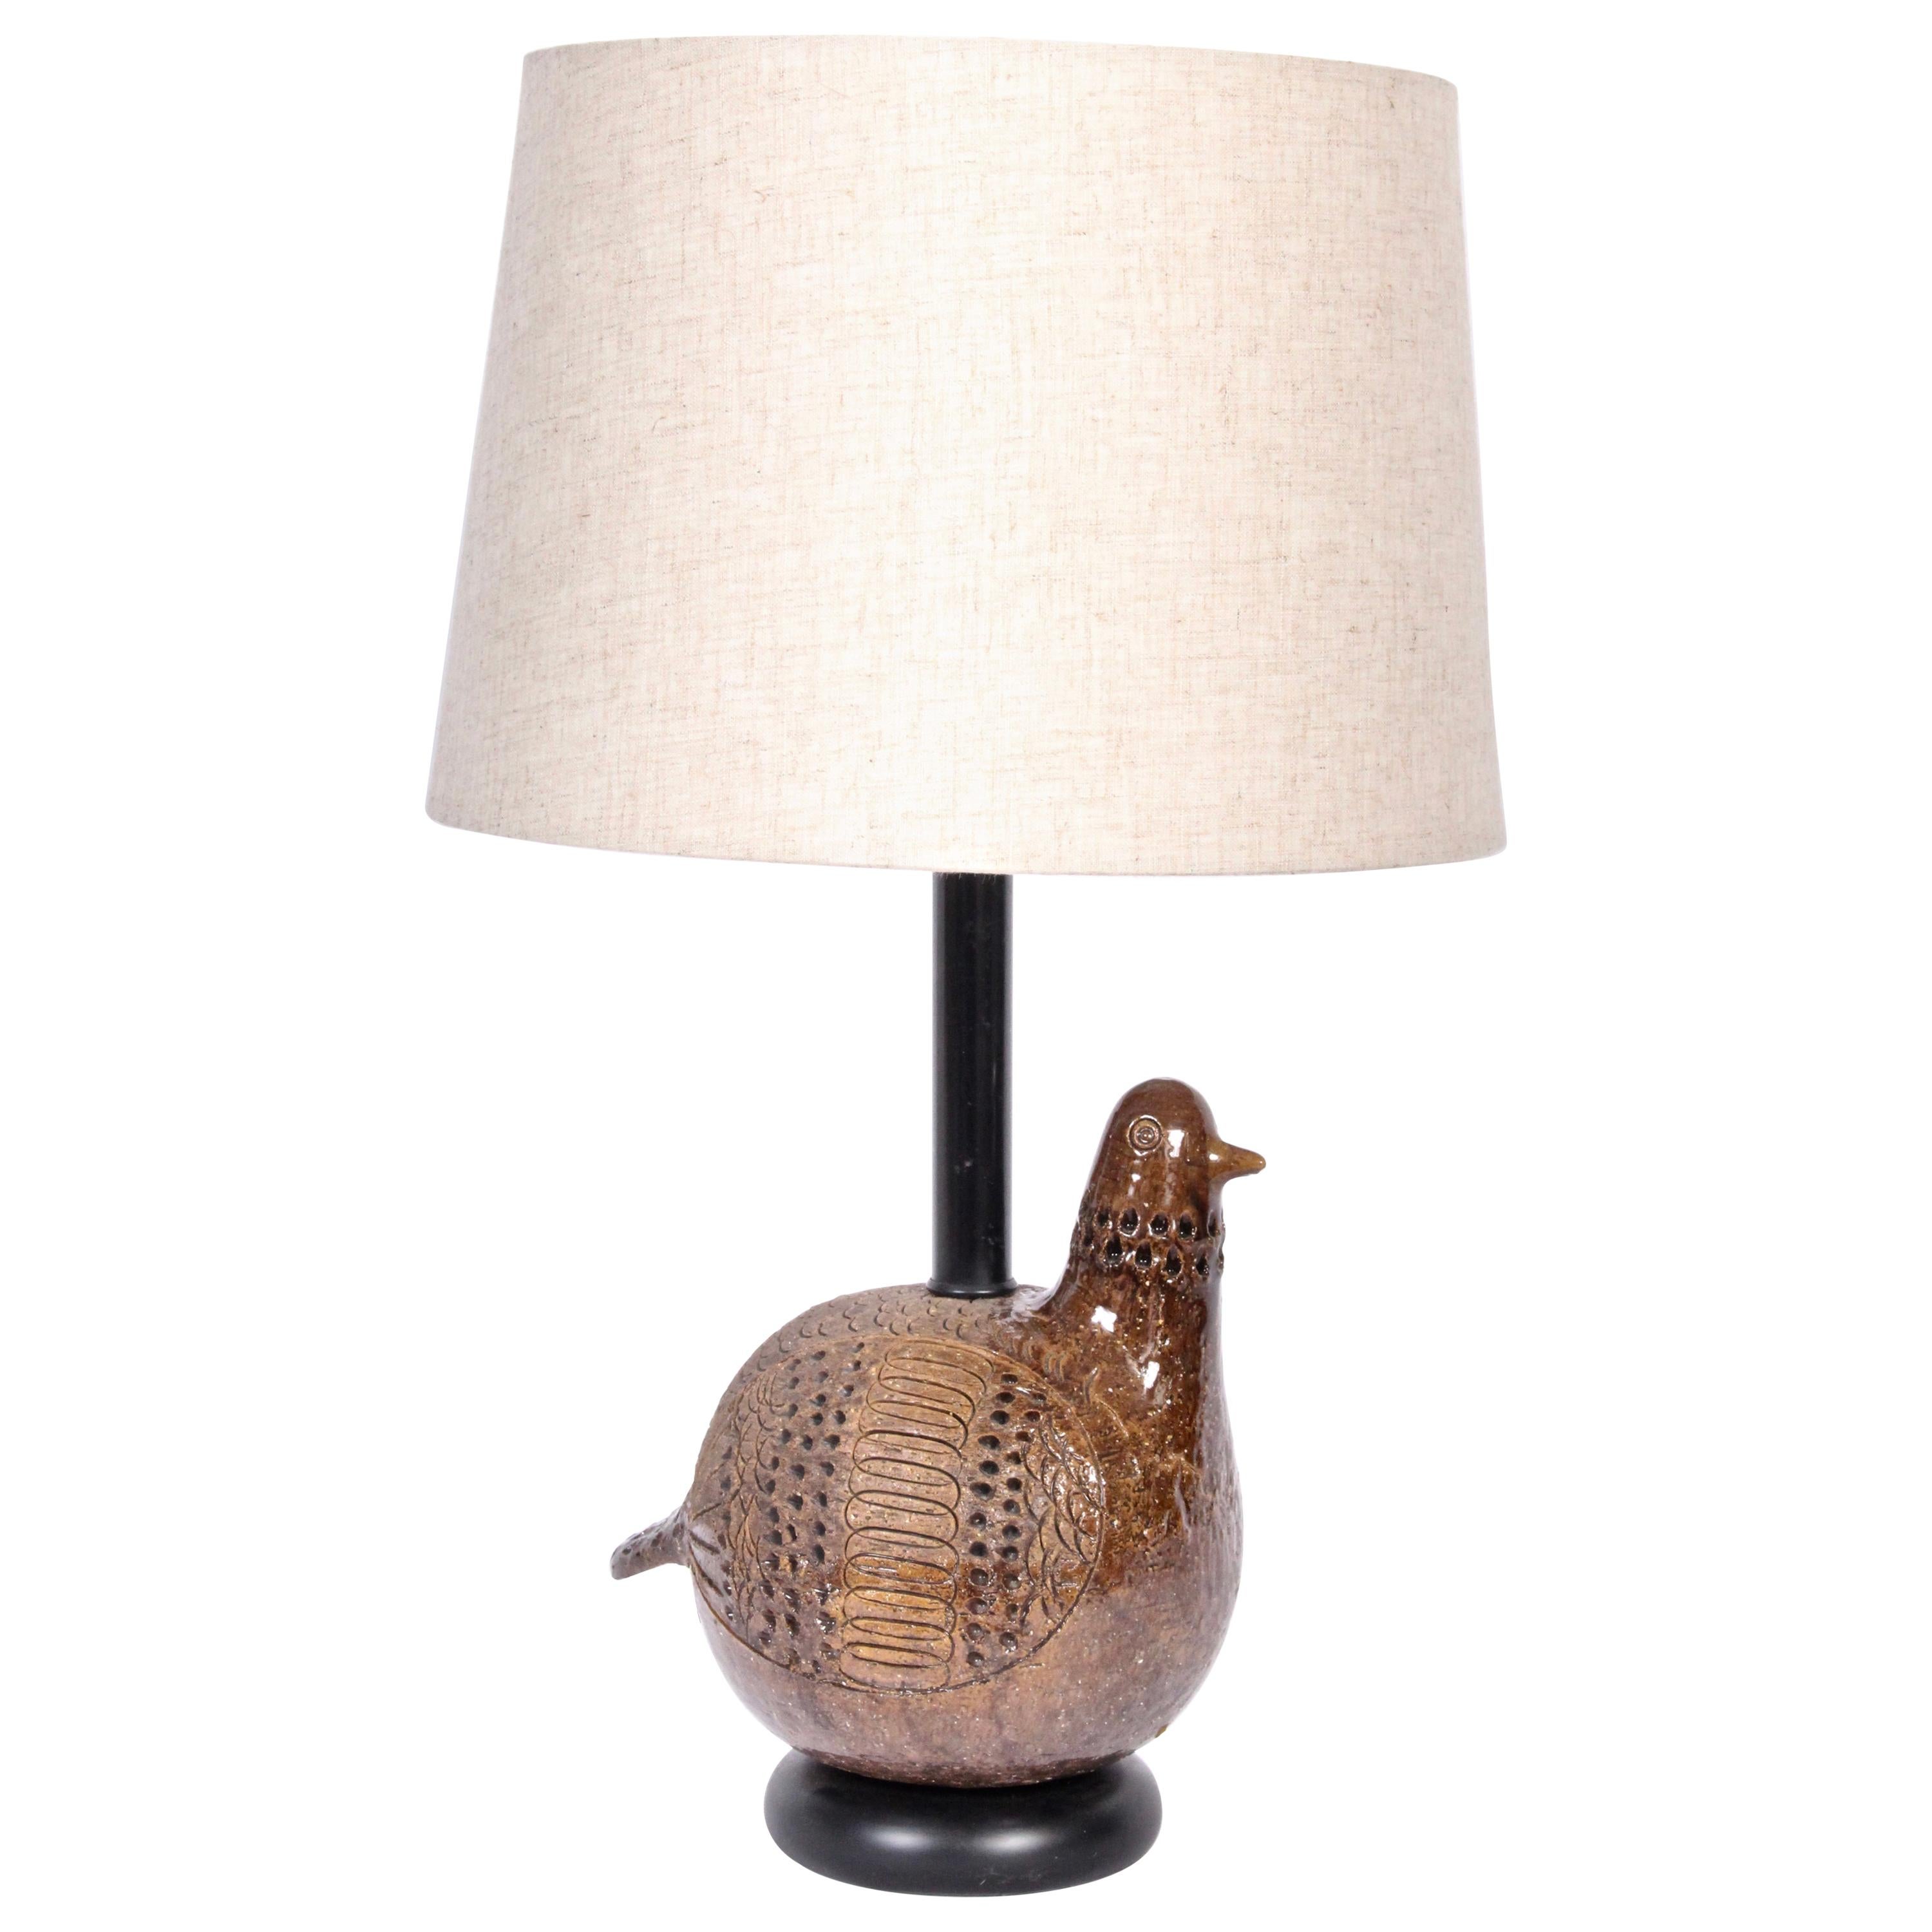 Aldo Londi for Bitossi Incised "Partridge" Ceramic Table Lamp, 1960s